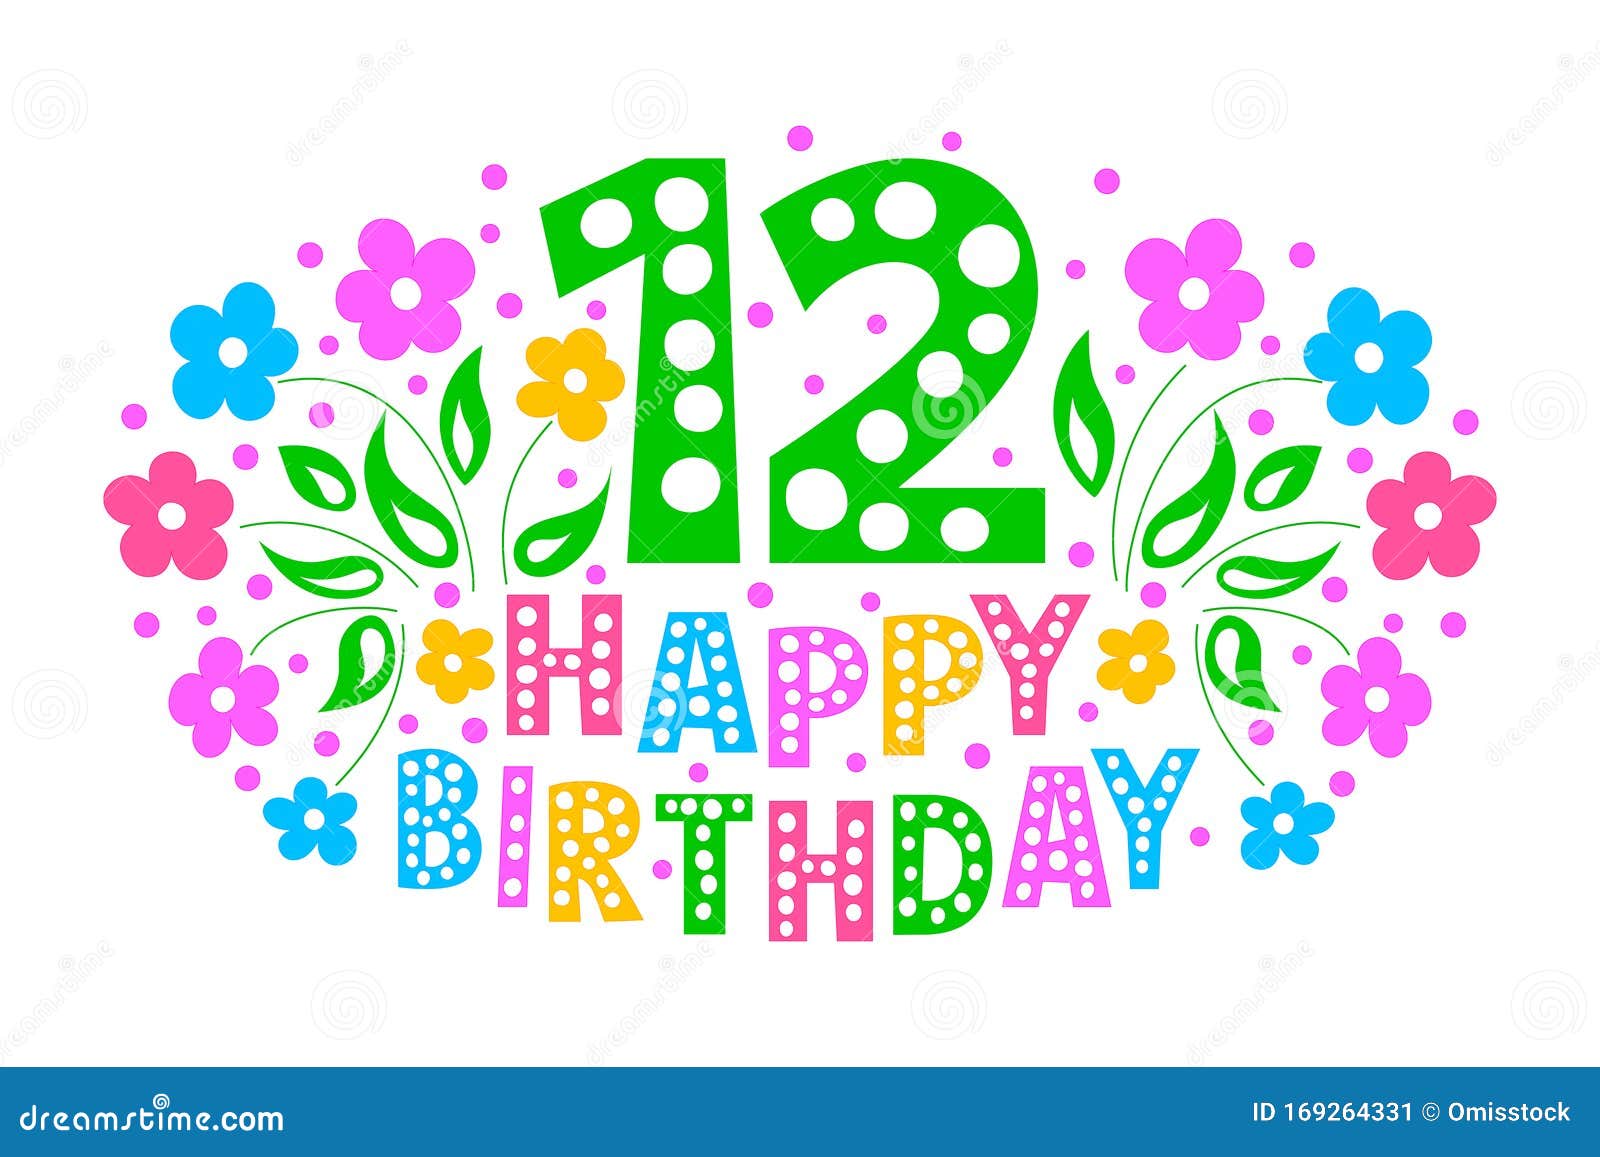 Chào mừng sinh nhật lần thứ 12 của bạn bằng thiệp kỷ niệm 12 năm đầy ý nghĩa và sự chúc phúc tuyệt vời. Thiết kế độc đáo với hình ảnh đầy sắc màu và thông điệp ý nghĩa sẽ góp phần làm nên một ngày sinh nhật trọn vẹn cho người nhận.